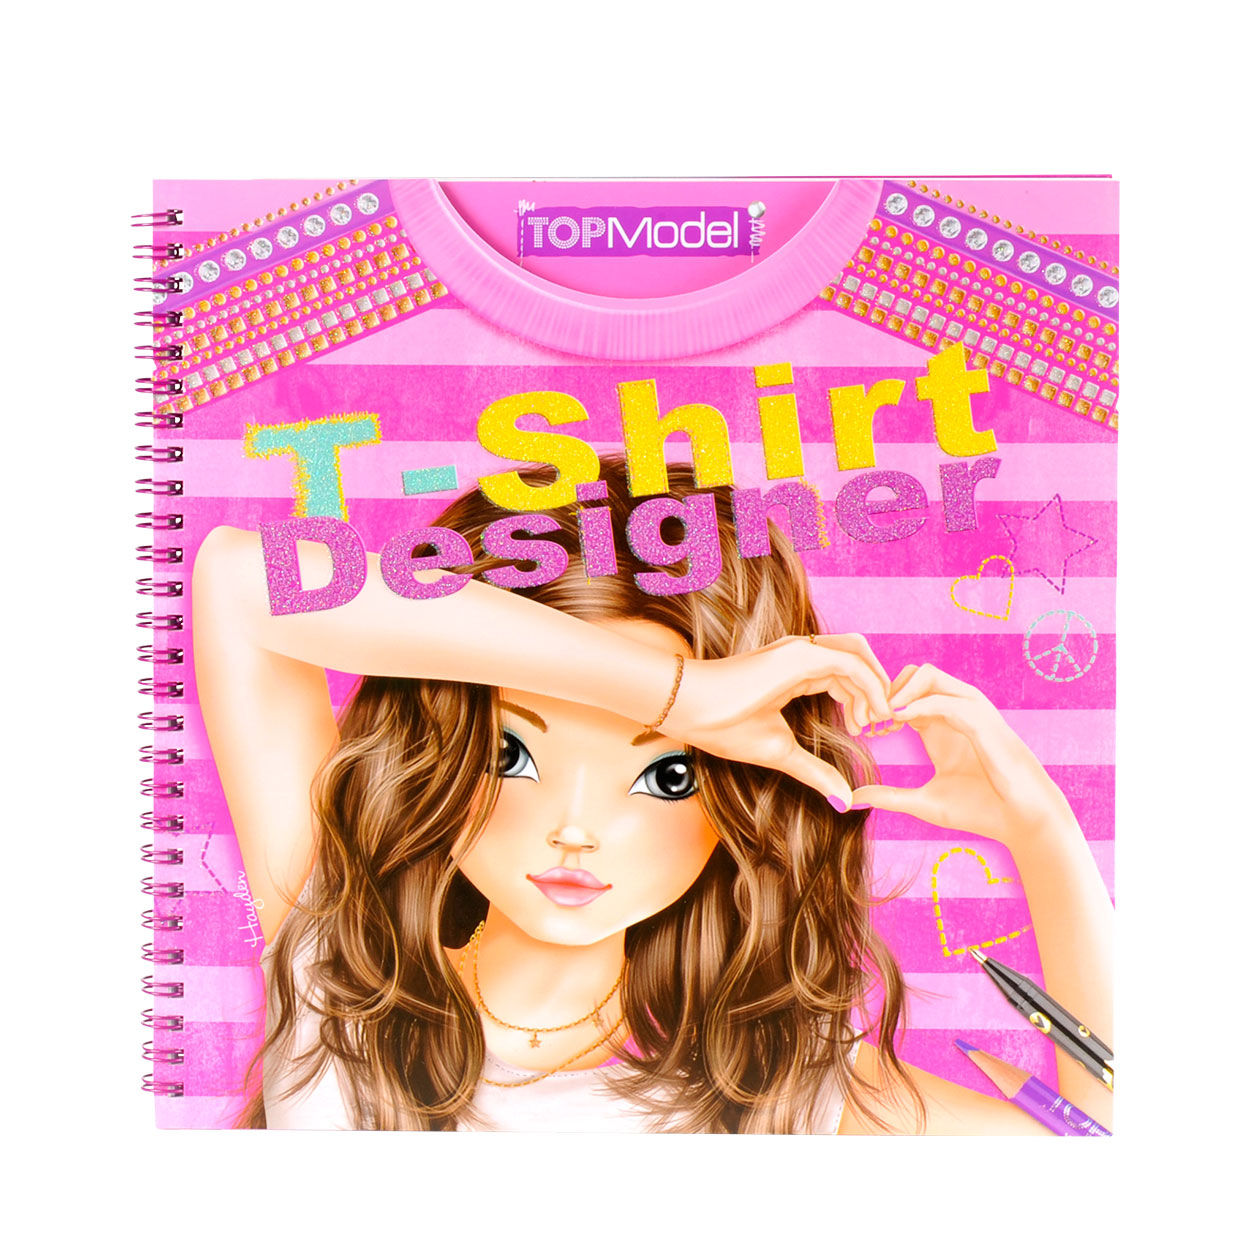 TOPModel T-shirt Designer Tekenboek